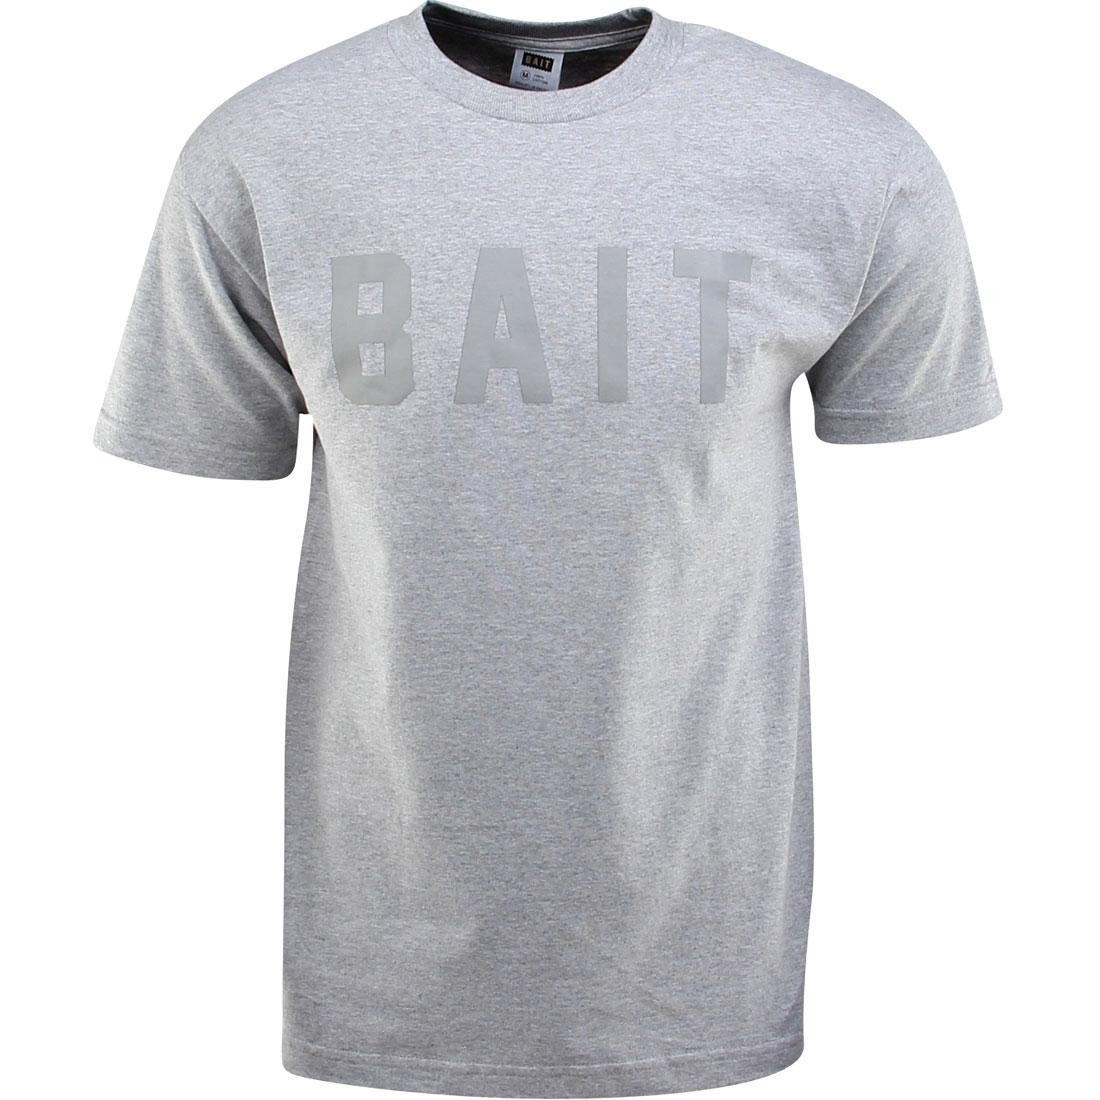 BAIT Logo Tee (gray / heather gray / gray)